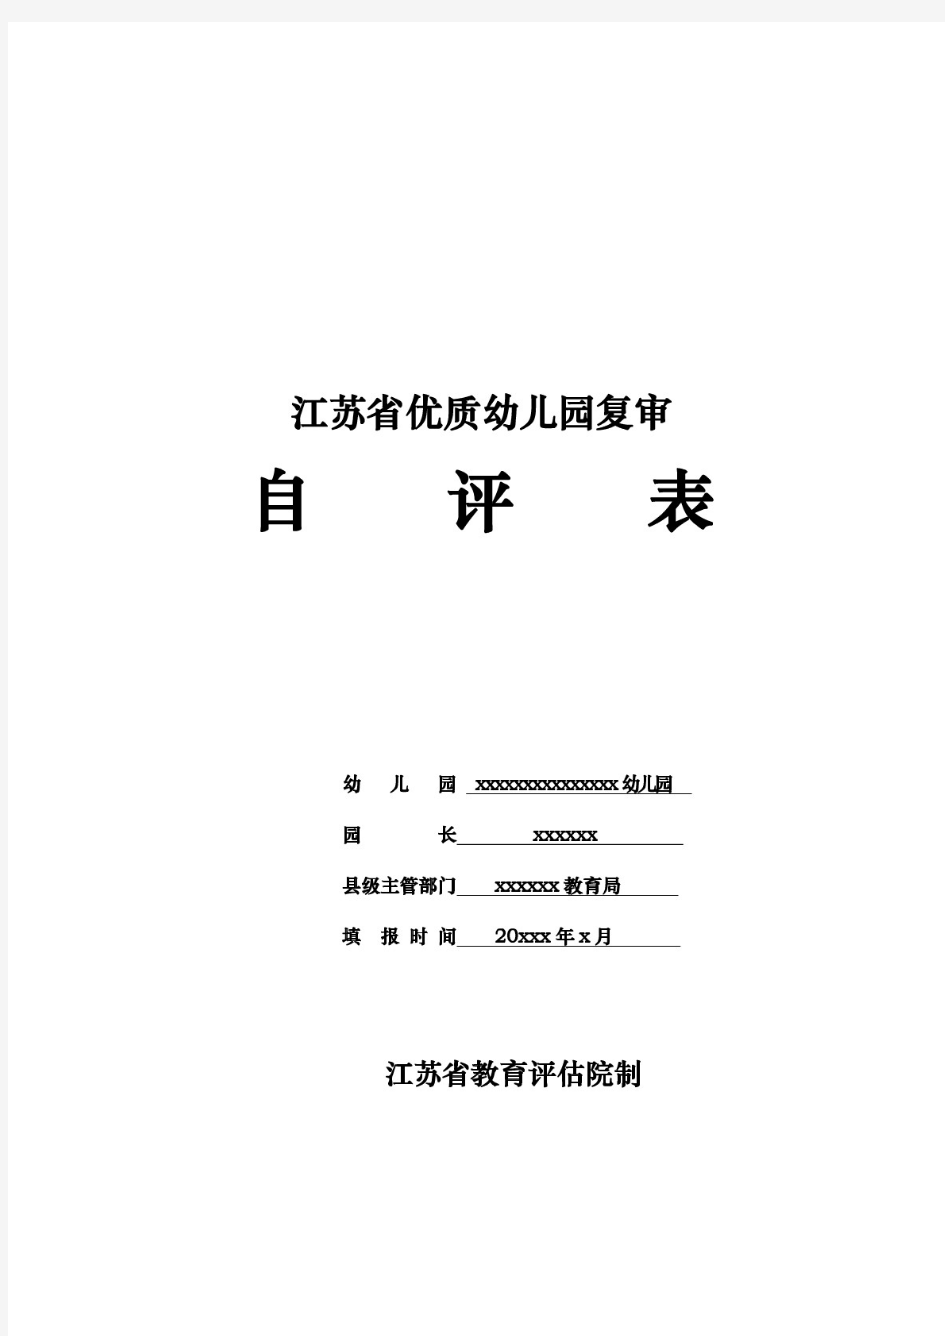 江苏省优质幼儿园复审自评表(自评报告、自评数据)新